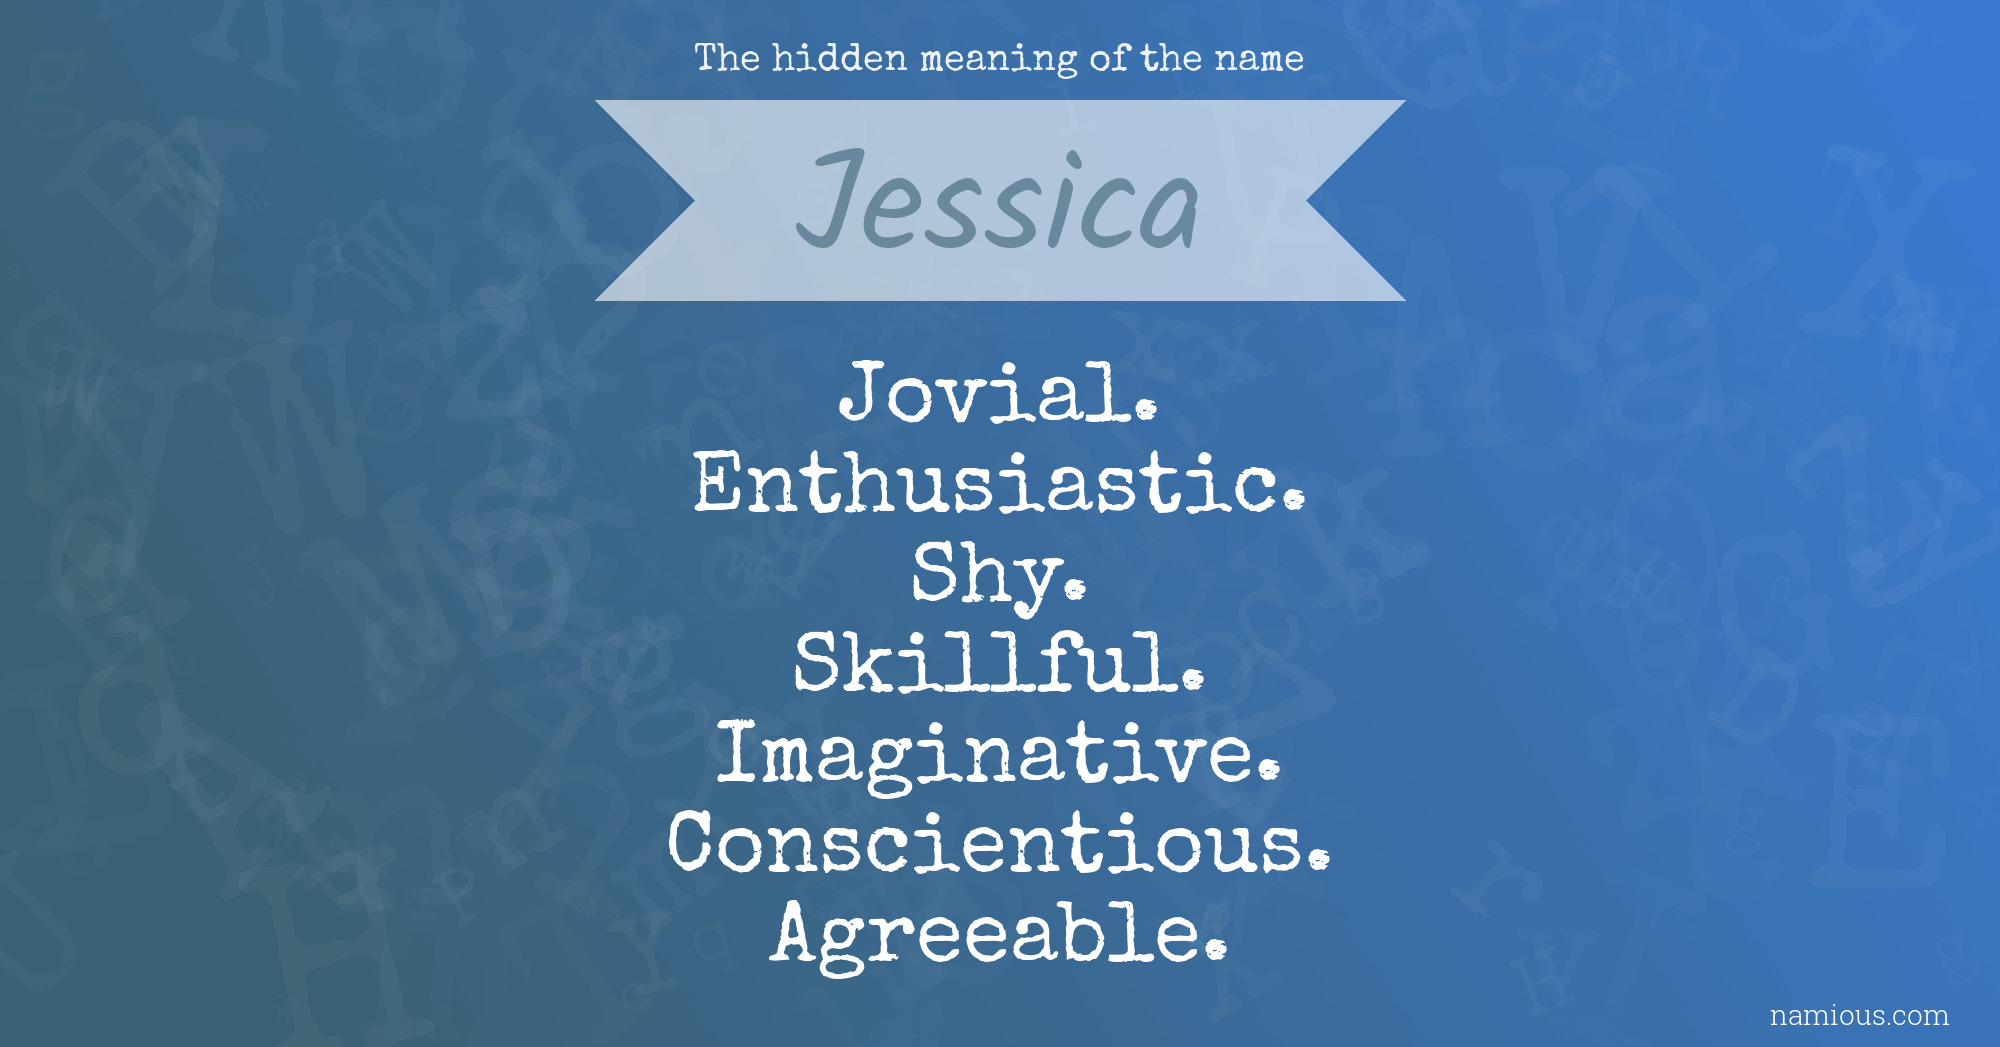 Jessica name 